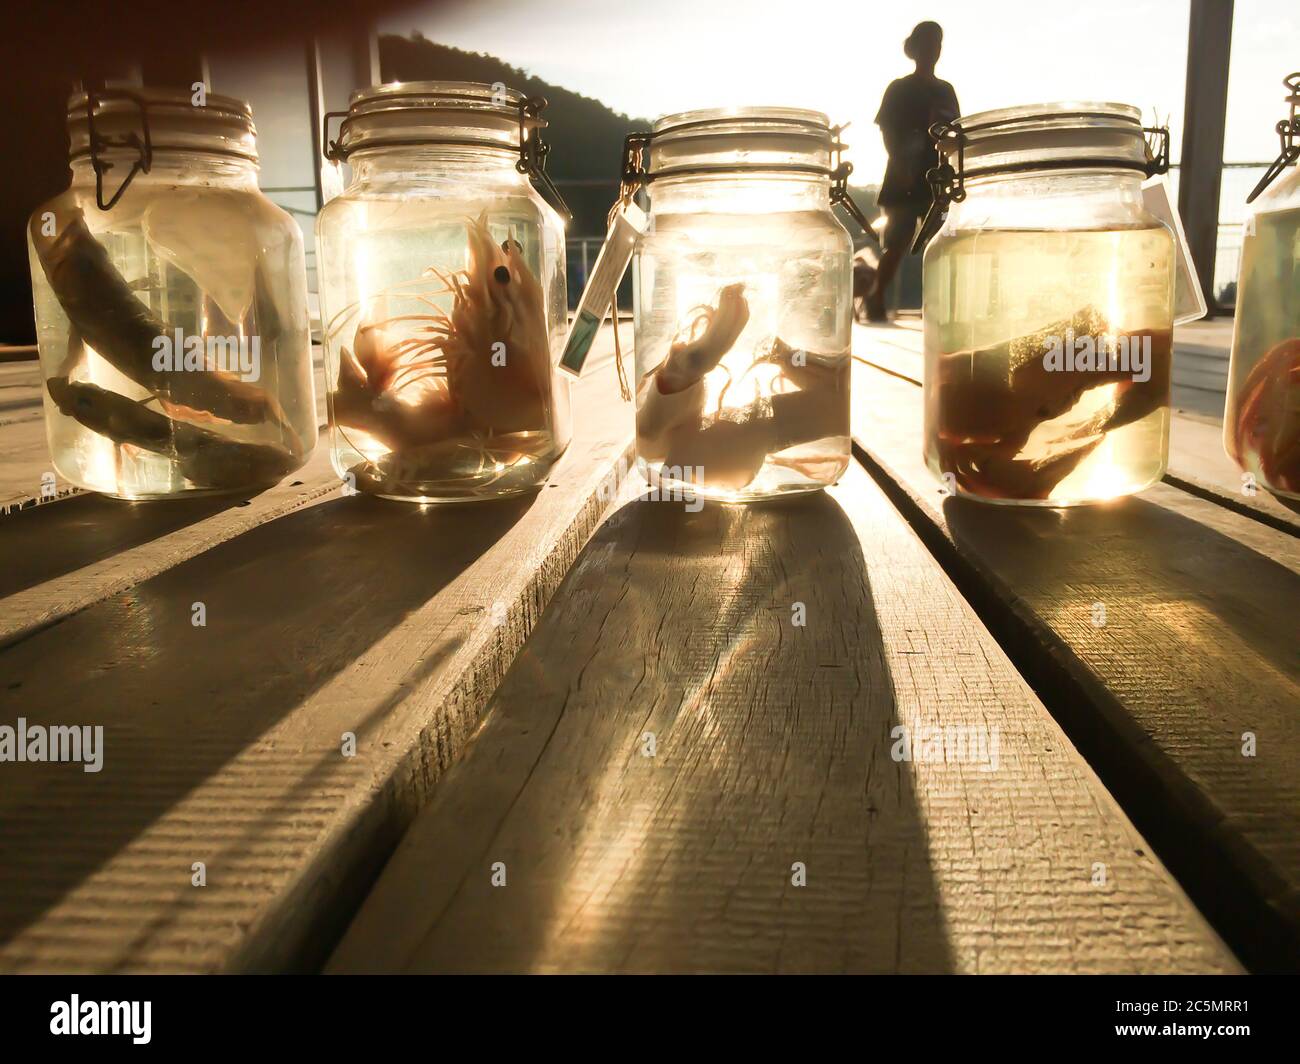 Spécimen de poisson de mer conservé dans des bocaux en verre au musée en plein air, animaux en jarre dans une collection scientifique de musée d'ichtyologie. Thaïlande. Banque D'Images